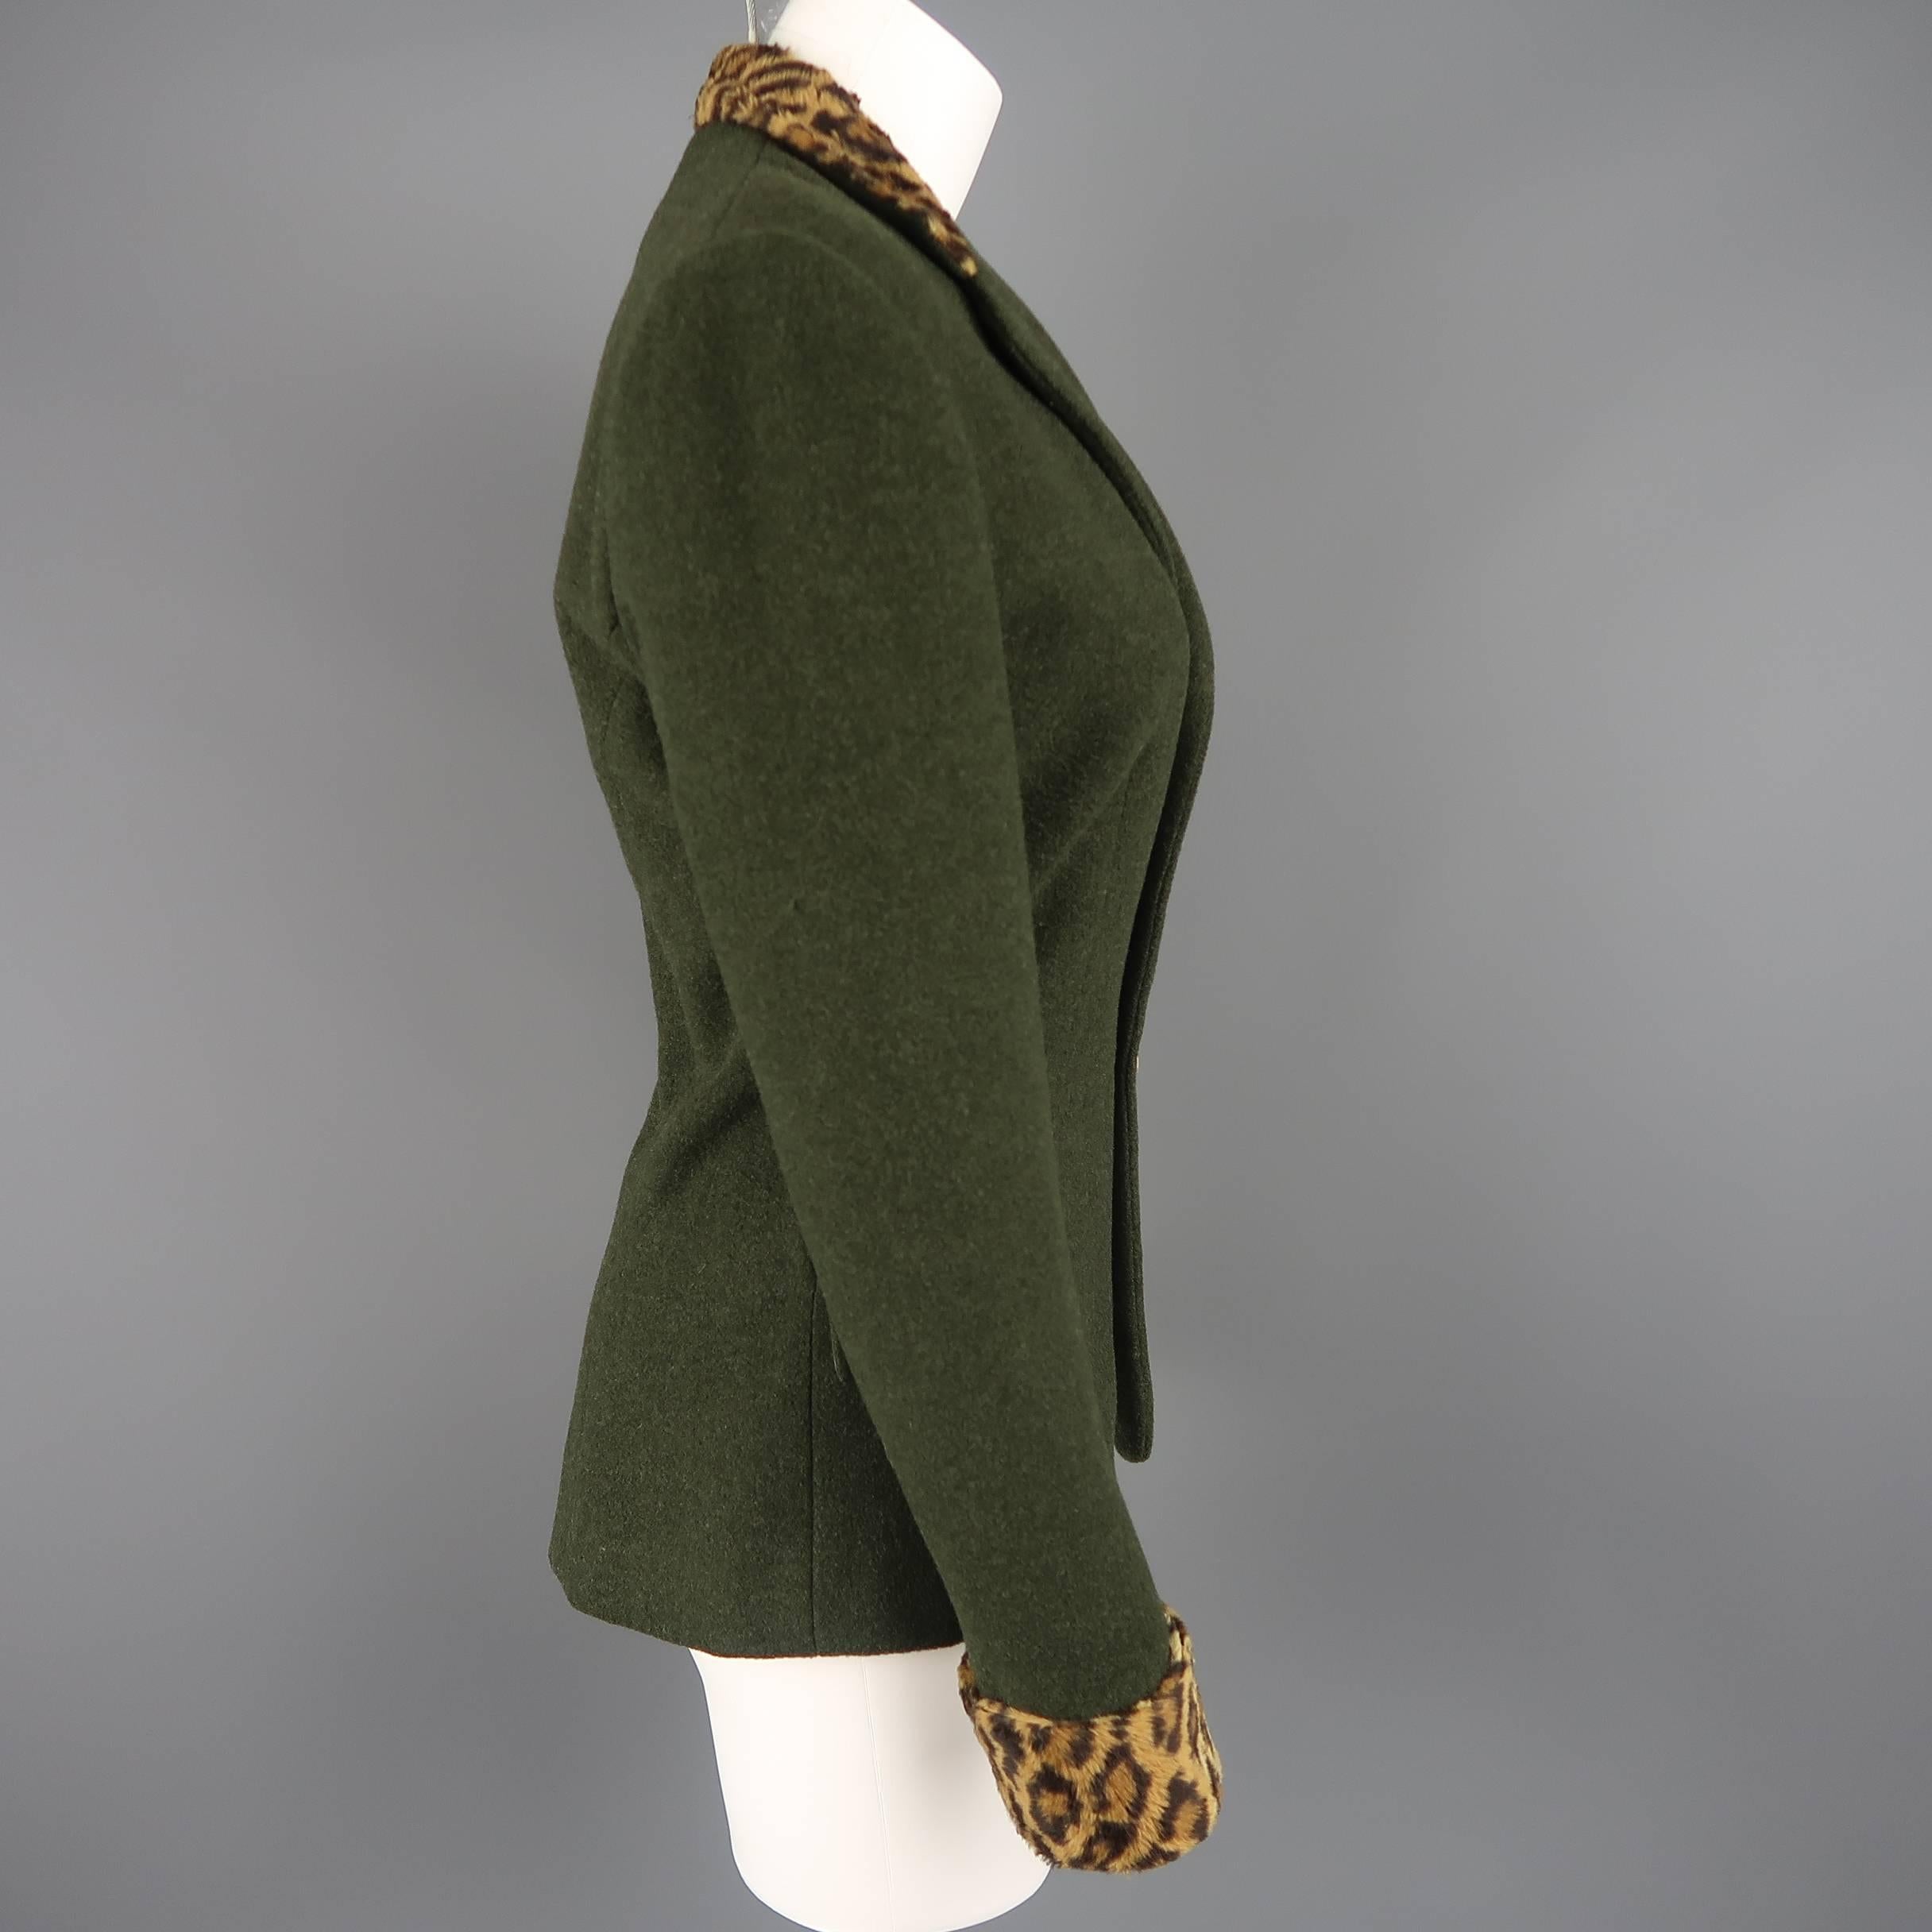 RALPH LAUREN Size 4 Green Wool / Cashmere Leopard Collar Jacket 1